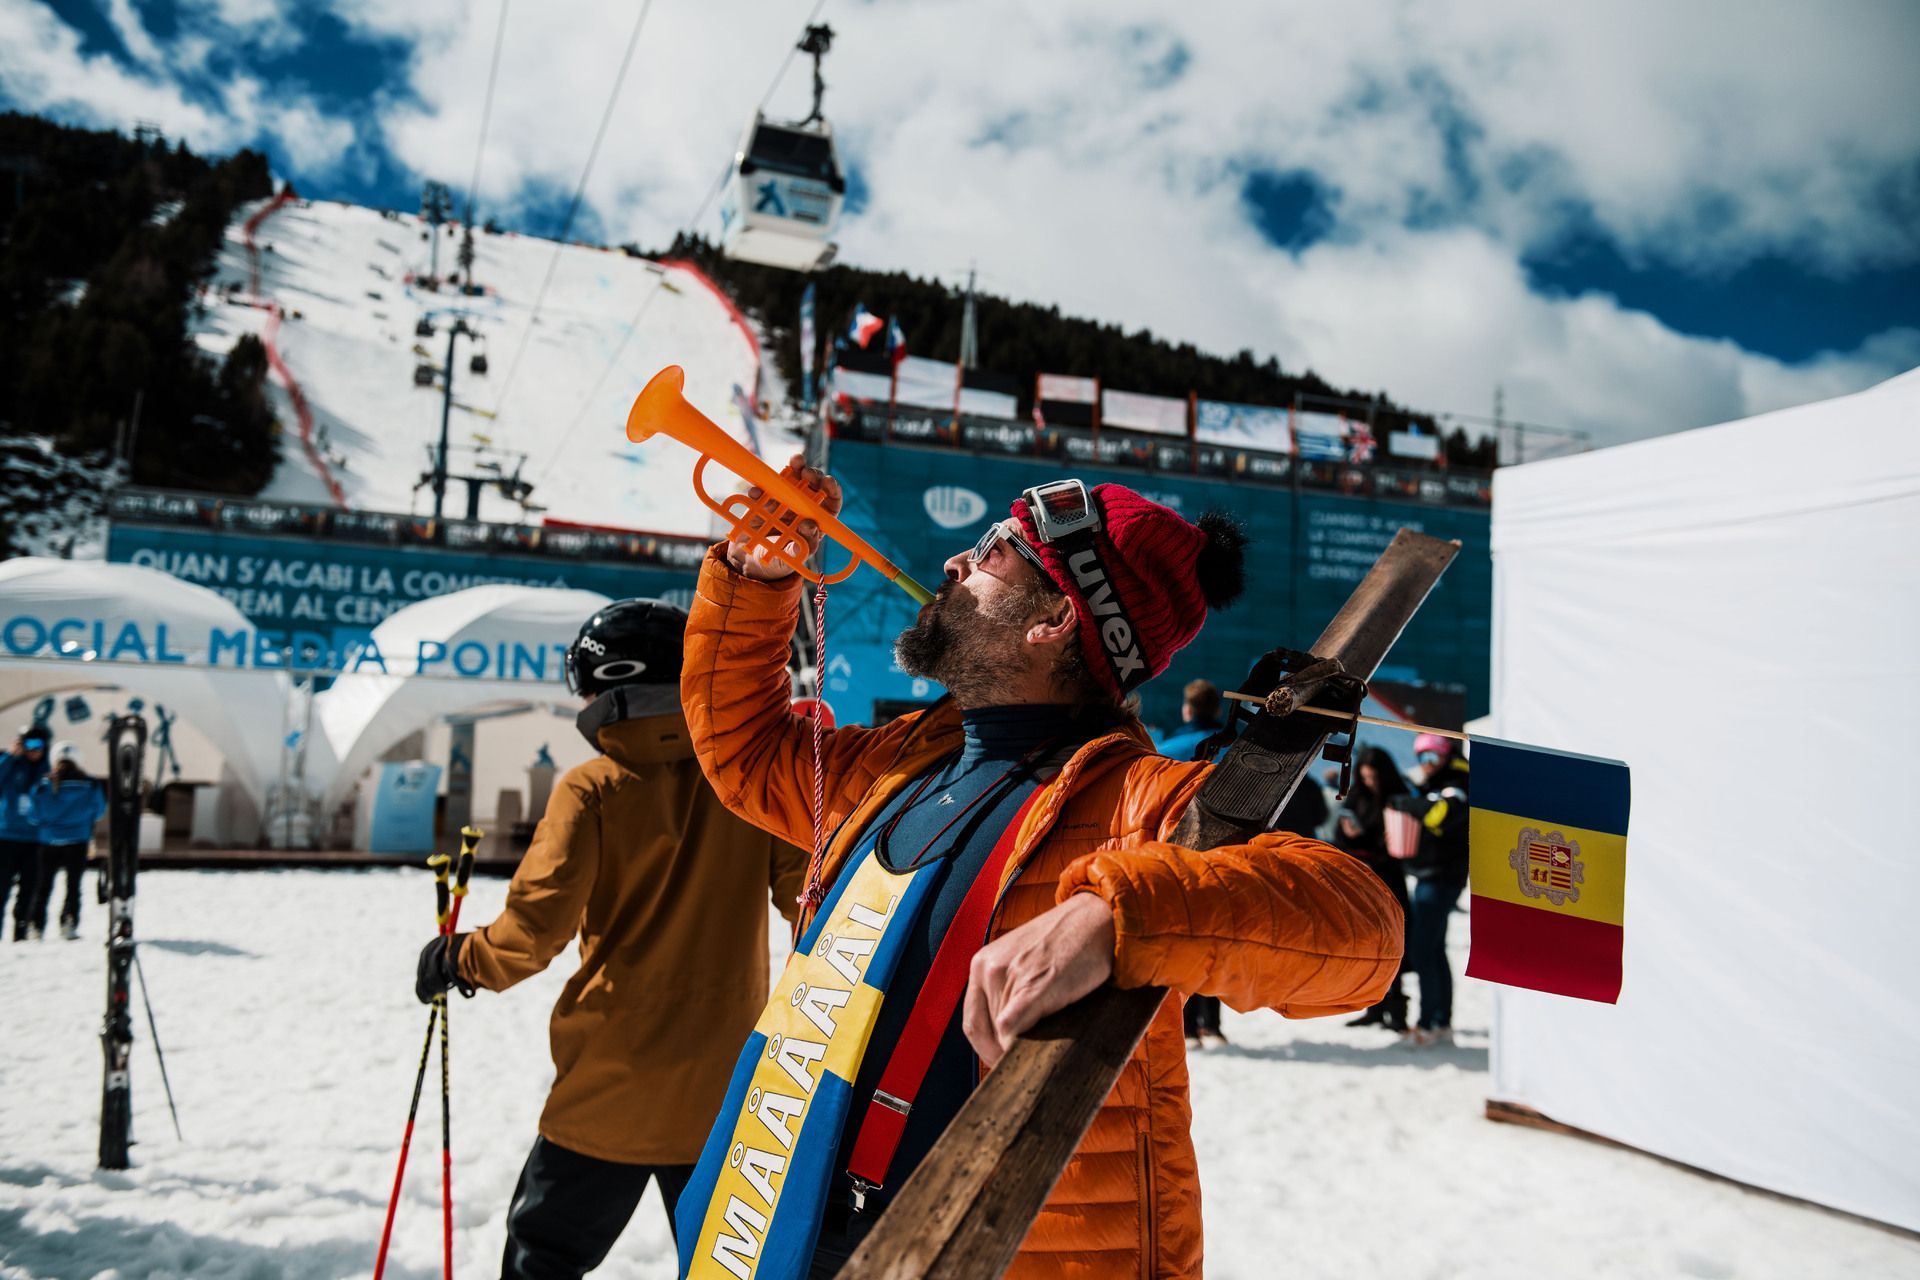 disfrazados en Andorra esqui